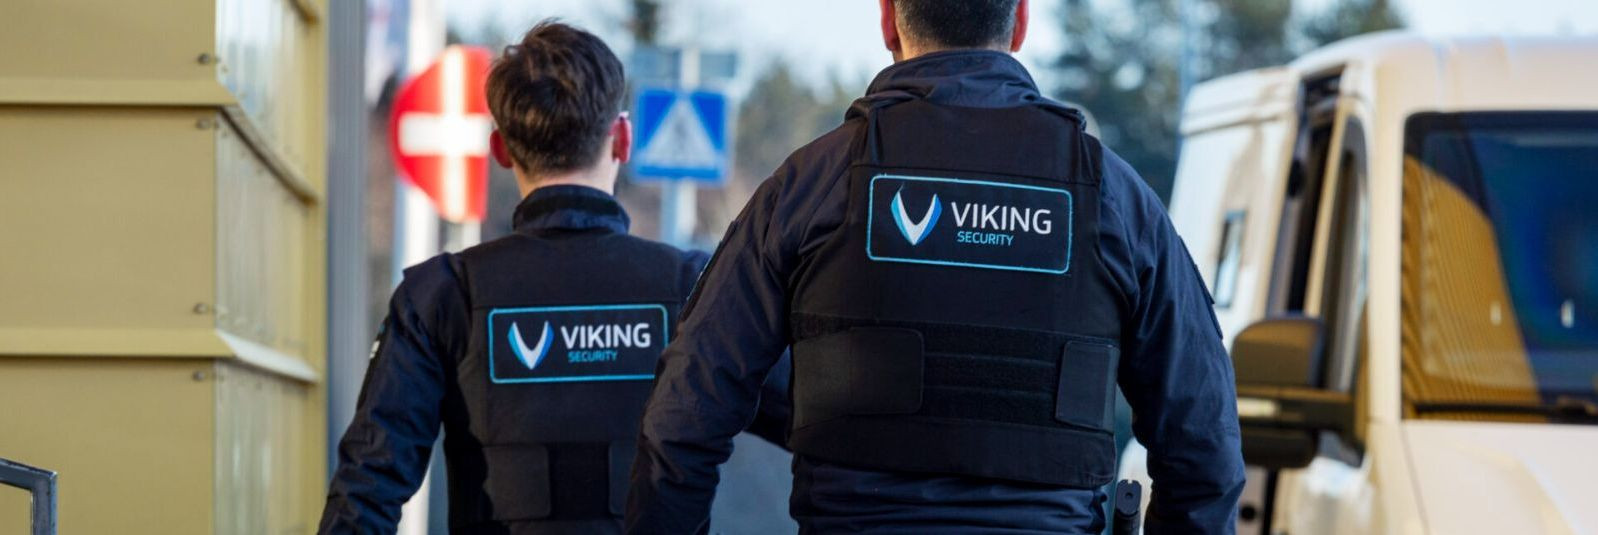 Turvalisus on üks olulisemaid väärtusi, mida inimesed otsivad nii oma isiklikus elus kui ka äriringkondades. Viking Security AS on Eestis tegutsev ettevõte, mis